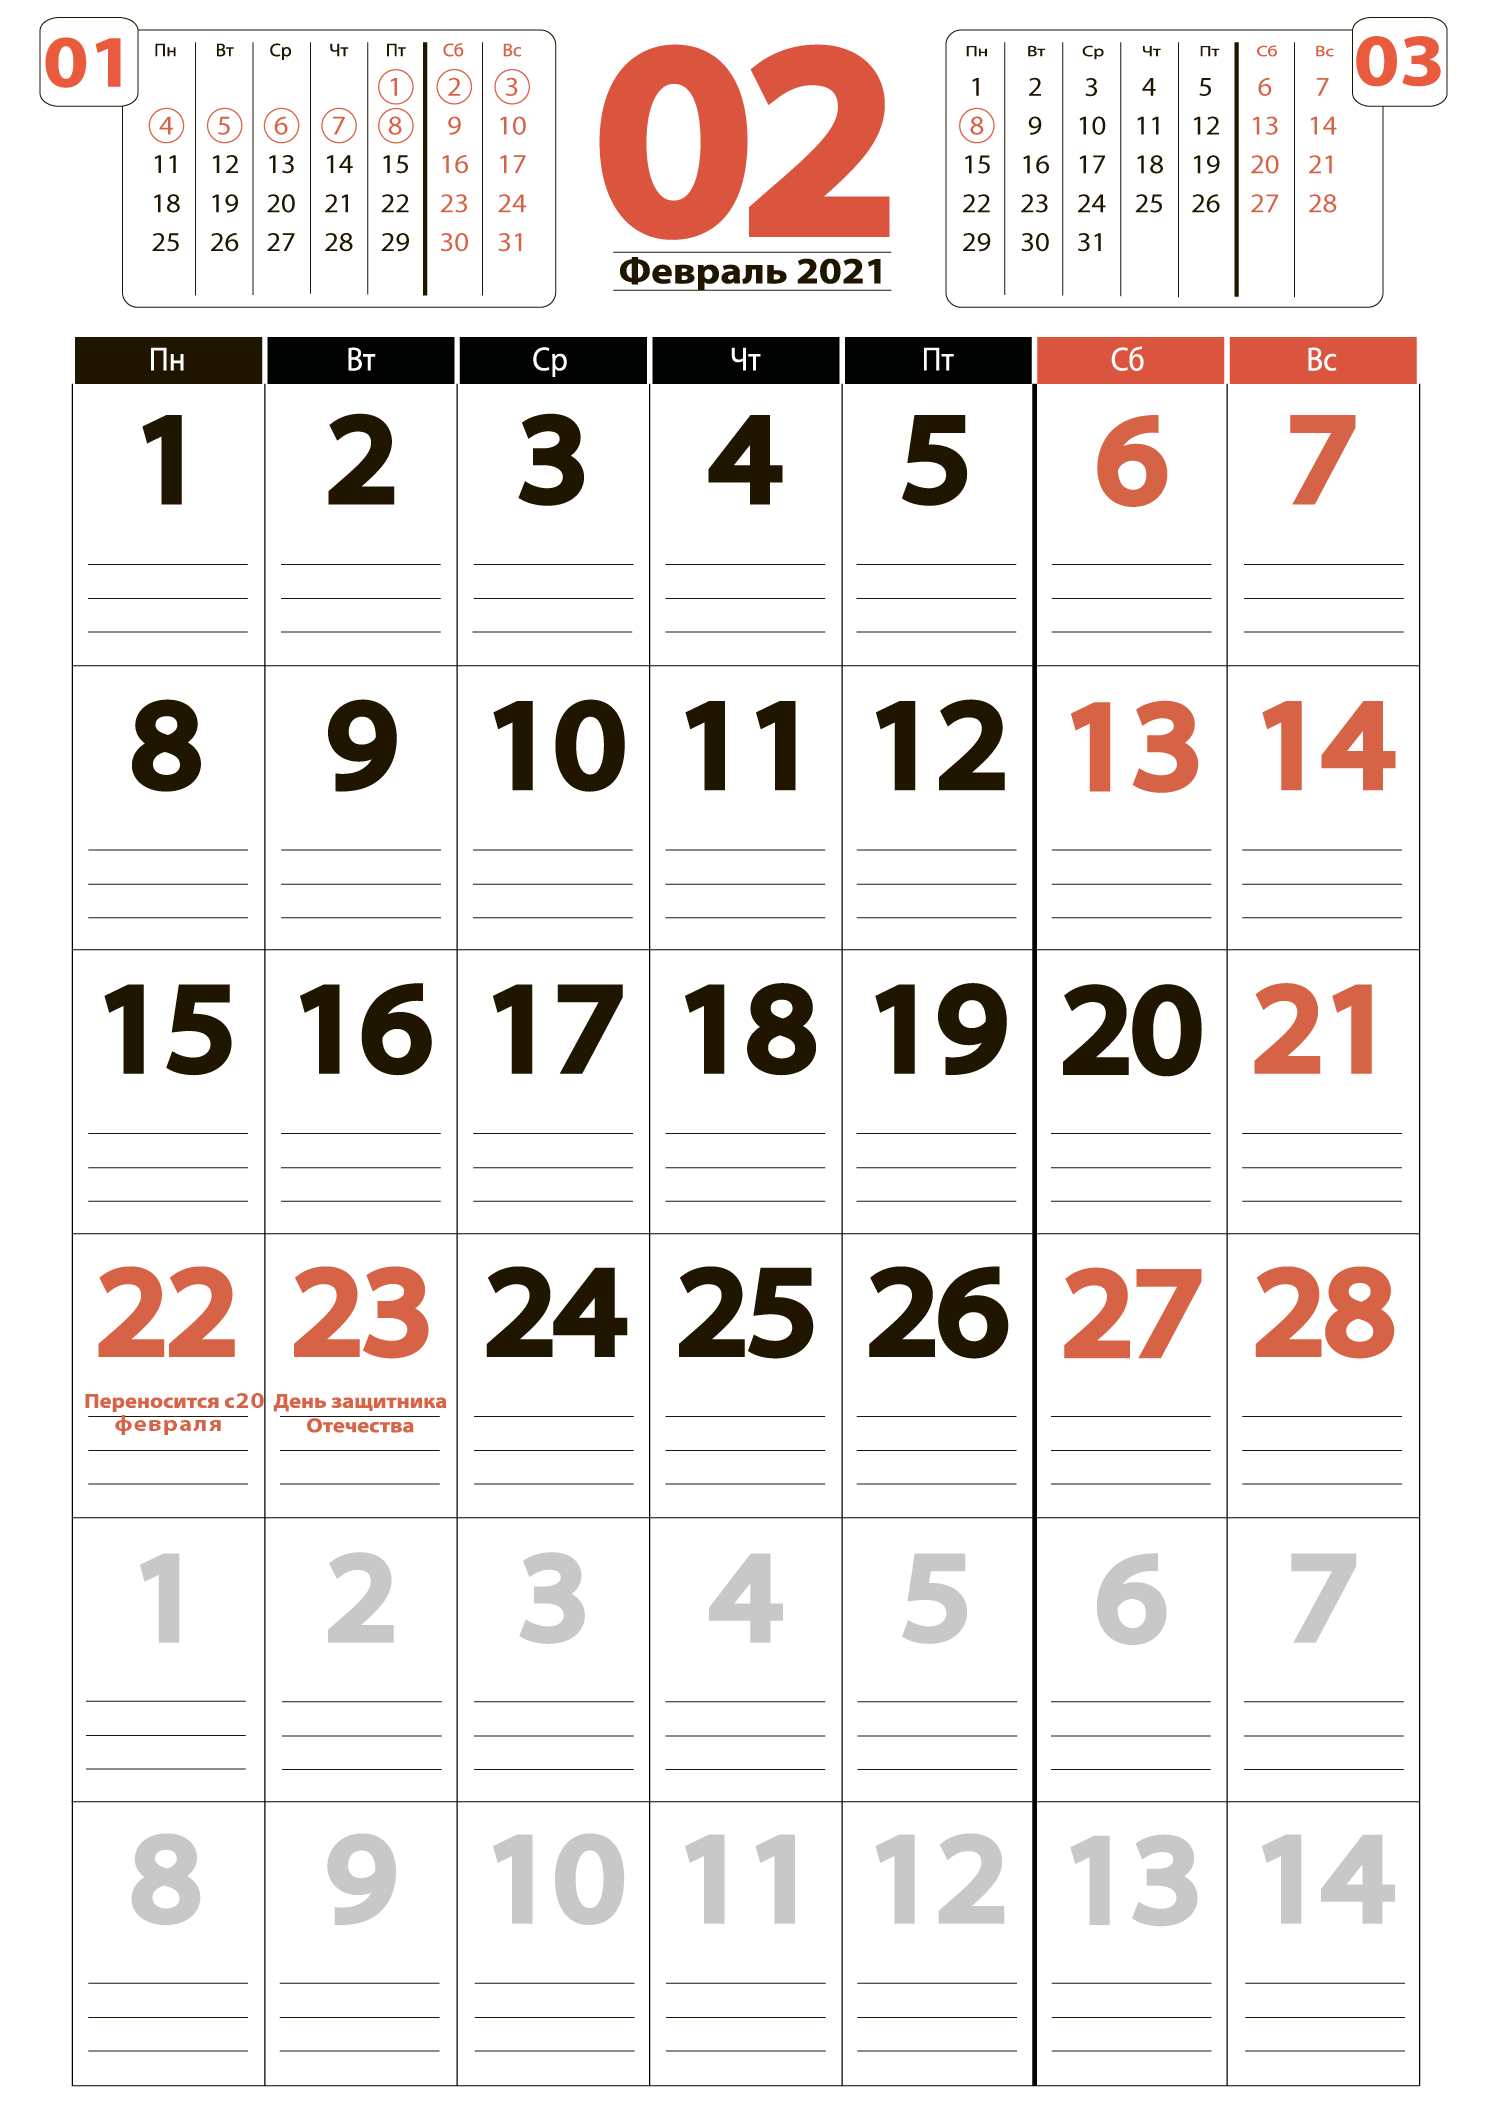 Печать крупного календаря на февраль 2021